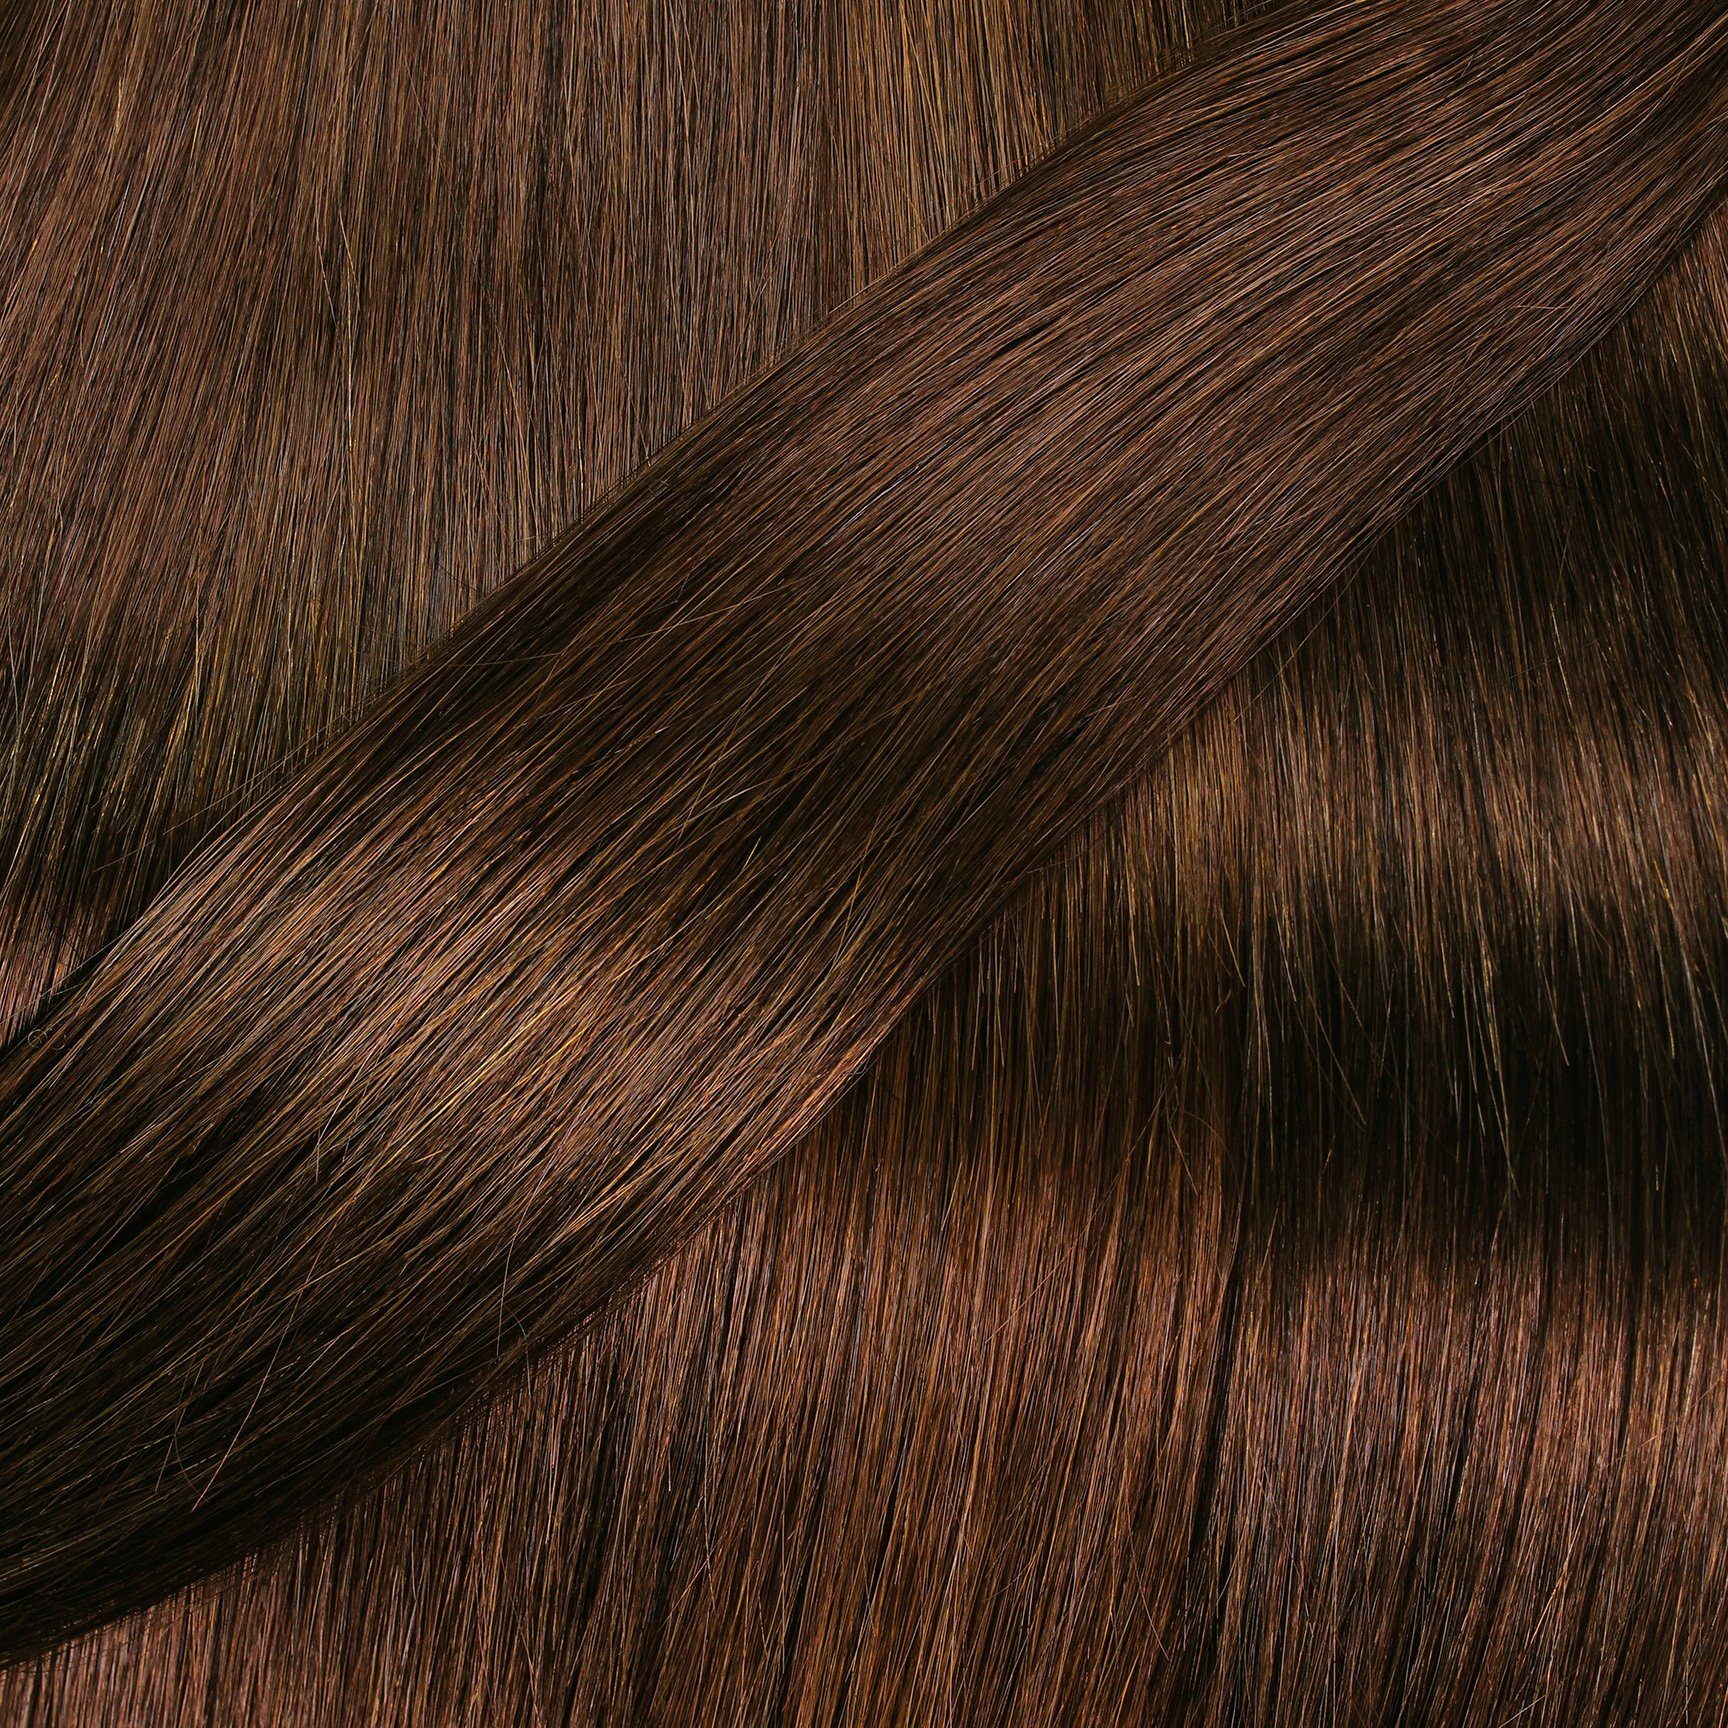 Echthaartresse #6/3 Gewellte Gold hair2heart 40cm Dunkelblond Echthaar-Extension